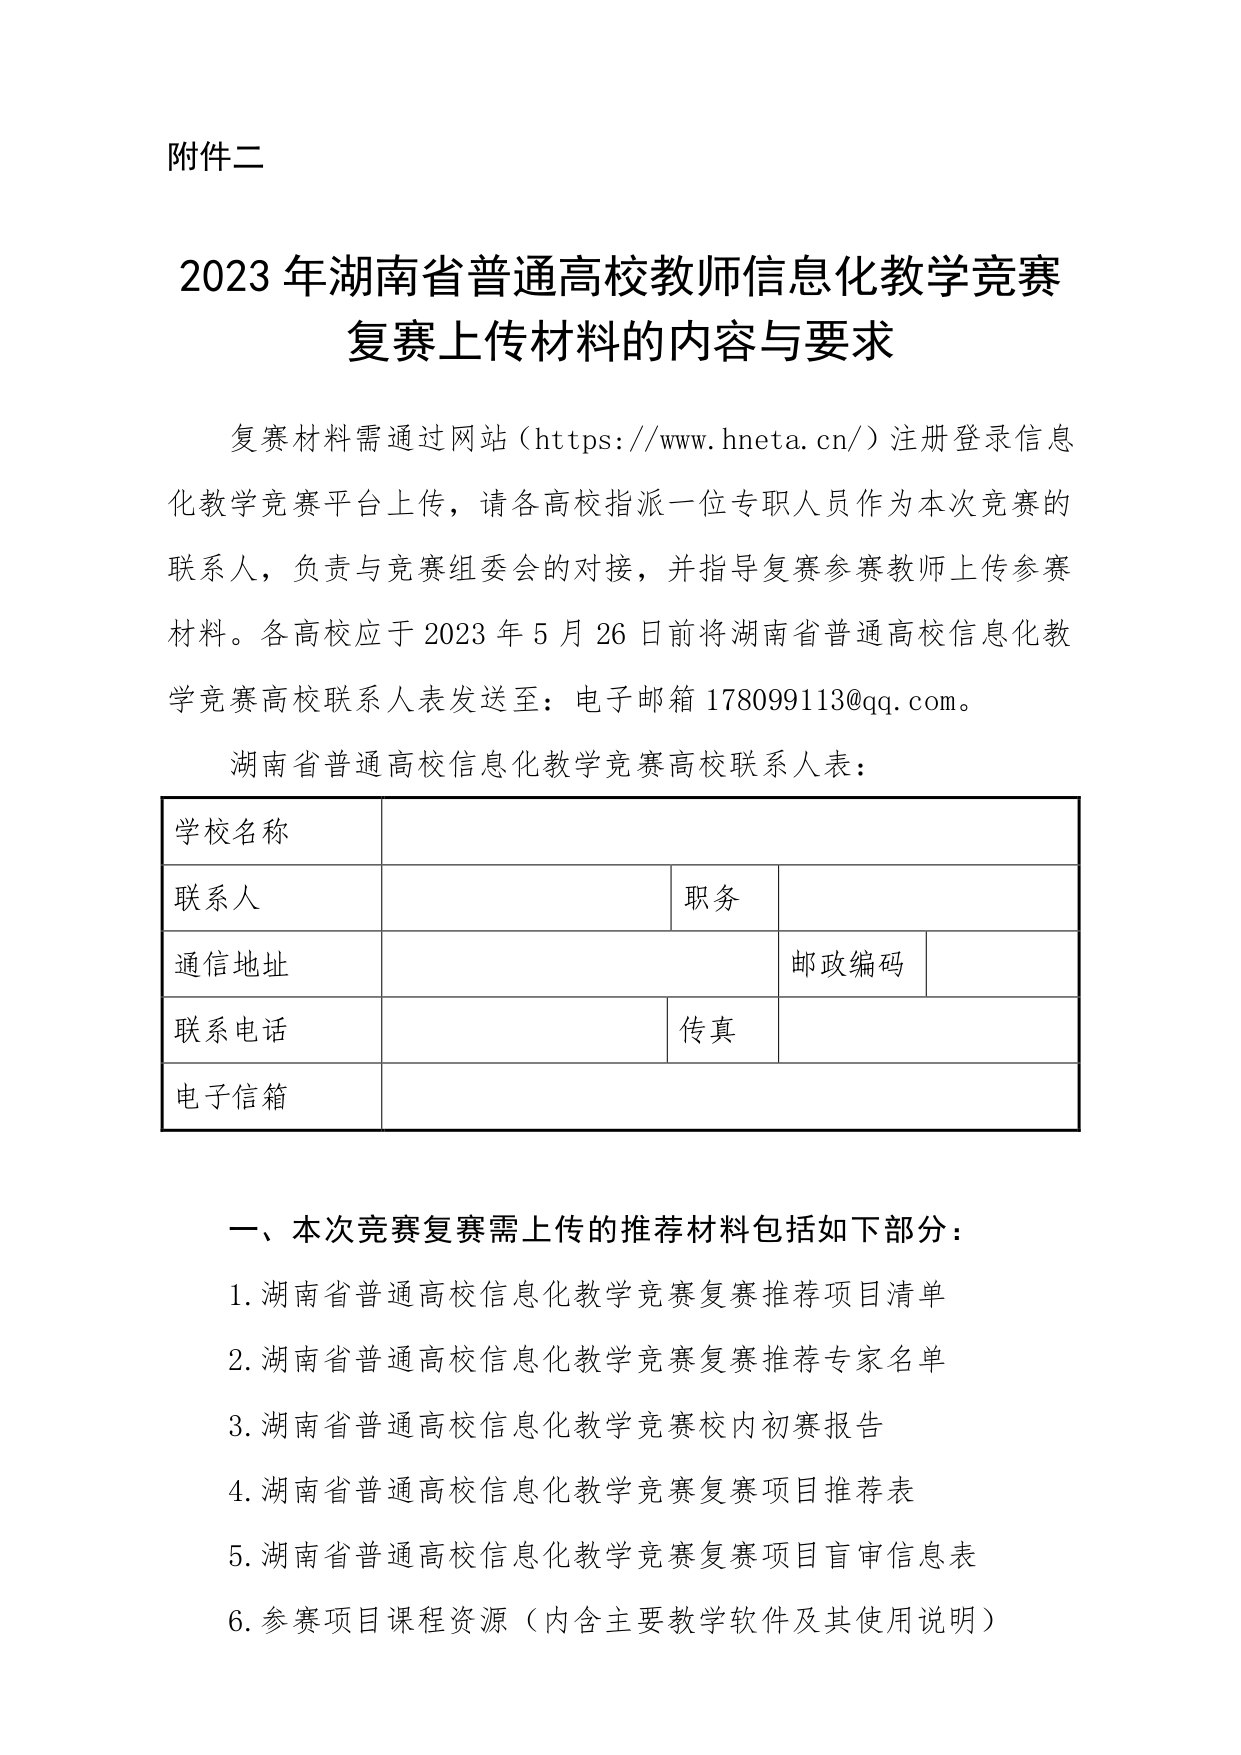 2023年专委会竞赛文件_page-0011.jpg